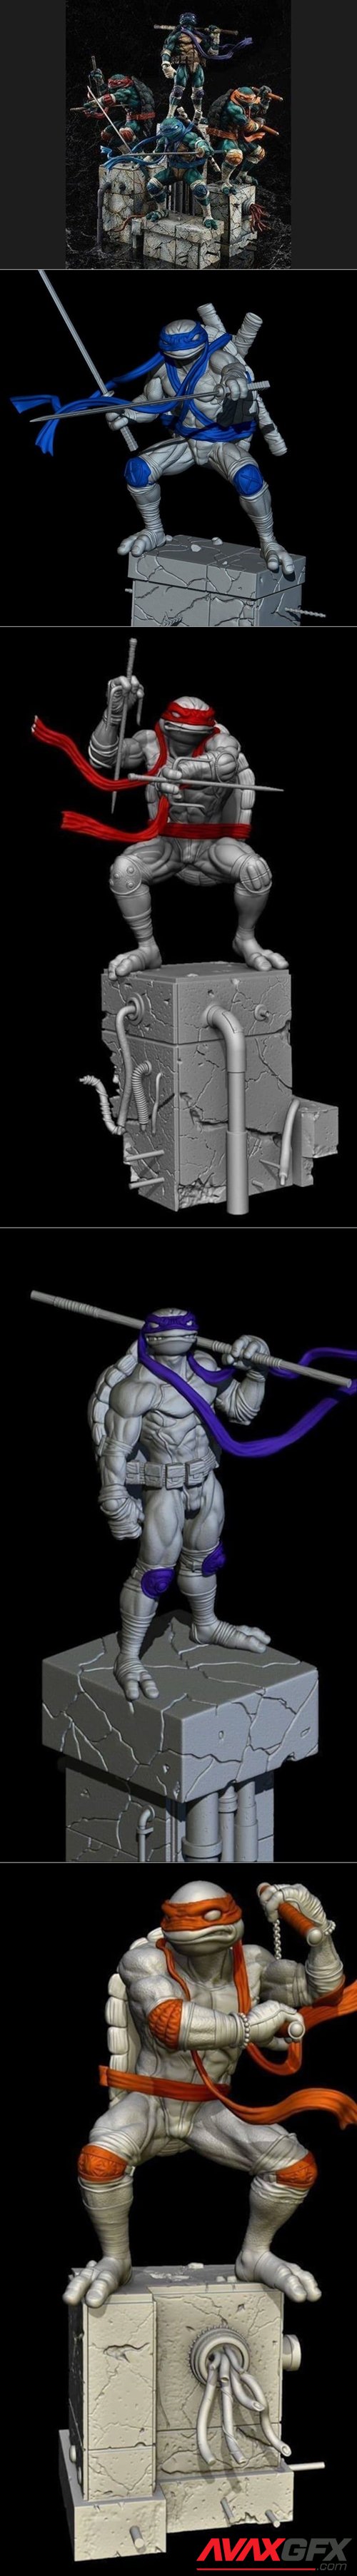 Tenage Mutant Ninja Turtle Diaroma – 3D Printable STL